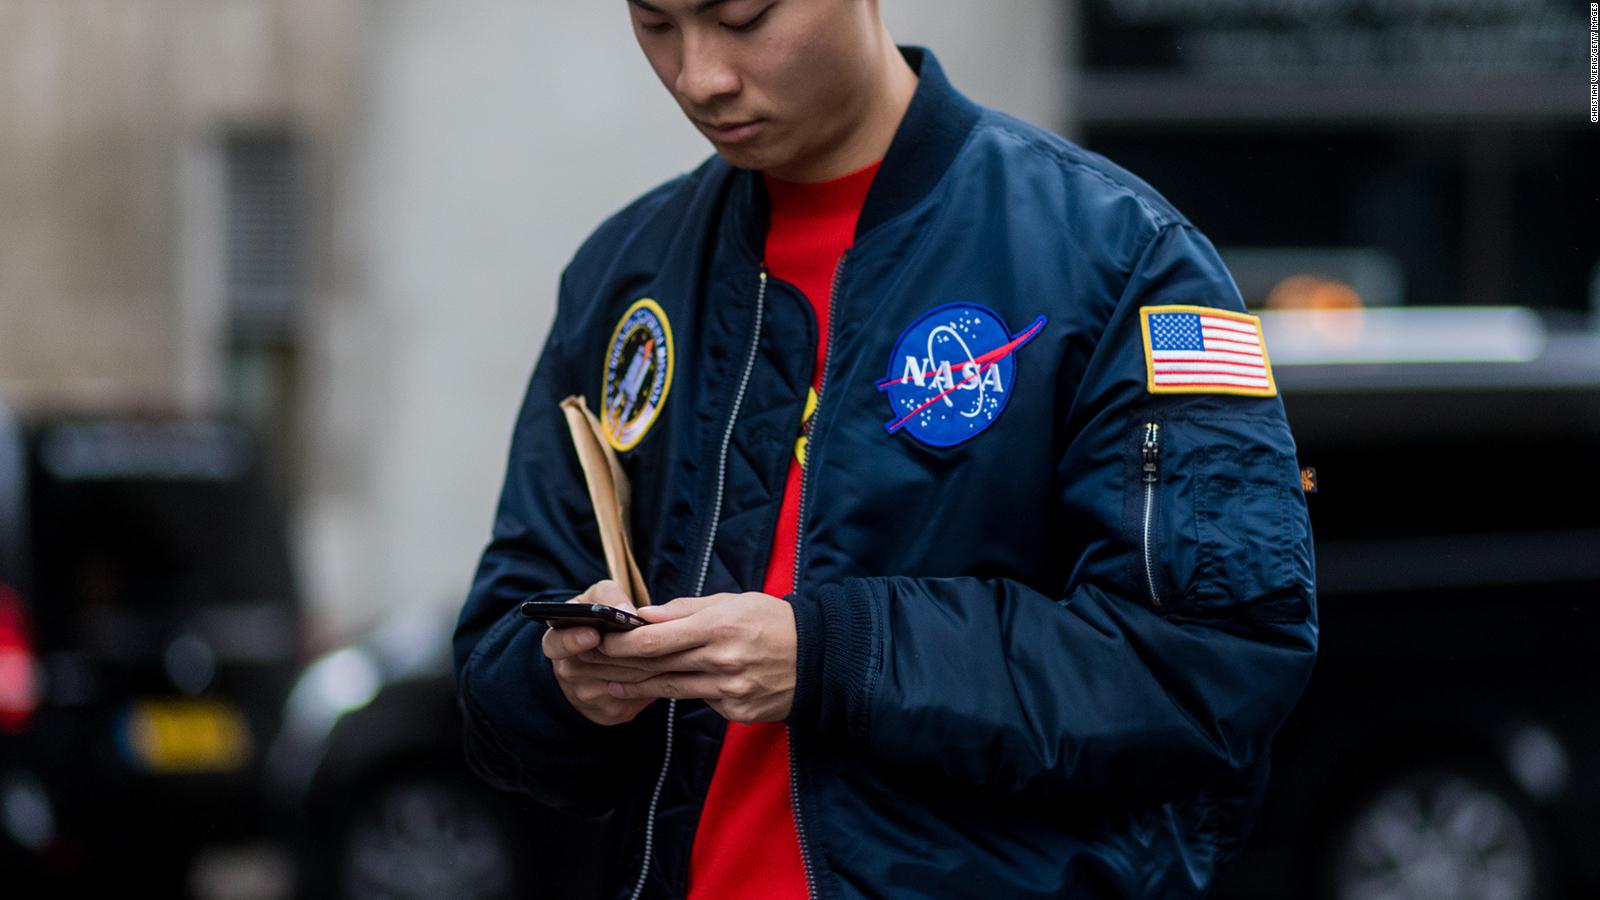 Por qué todo el mundo lleva ropa de la NASA? Esta es la historia detrás